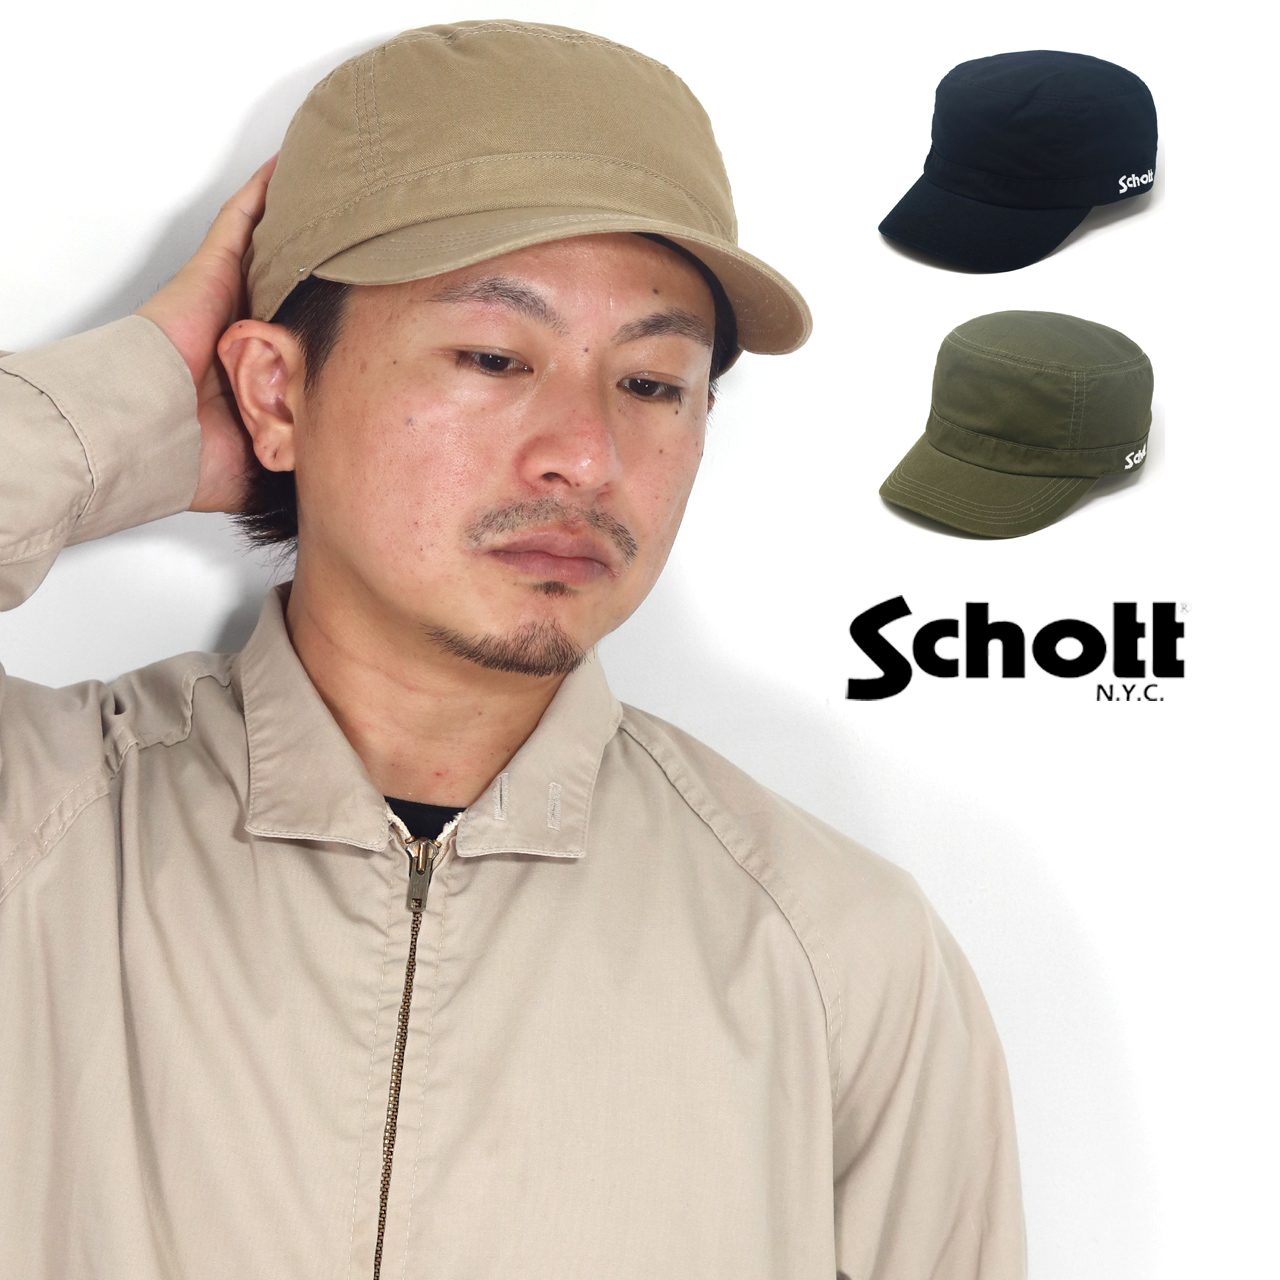 ワークキャップ シンプル カジュアル ショット コットンツイル Schott N.Y.C 帽子 キャ...